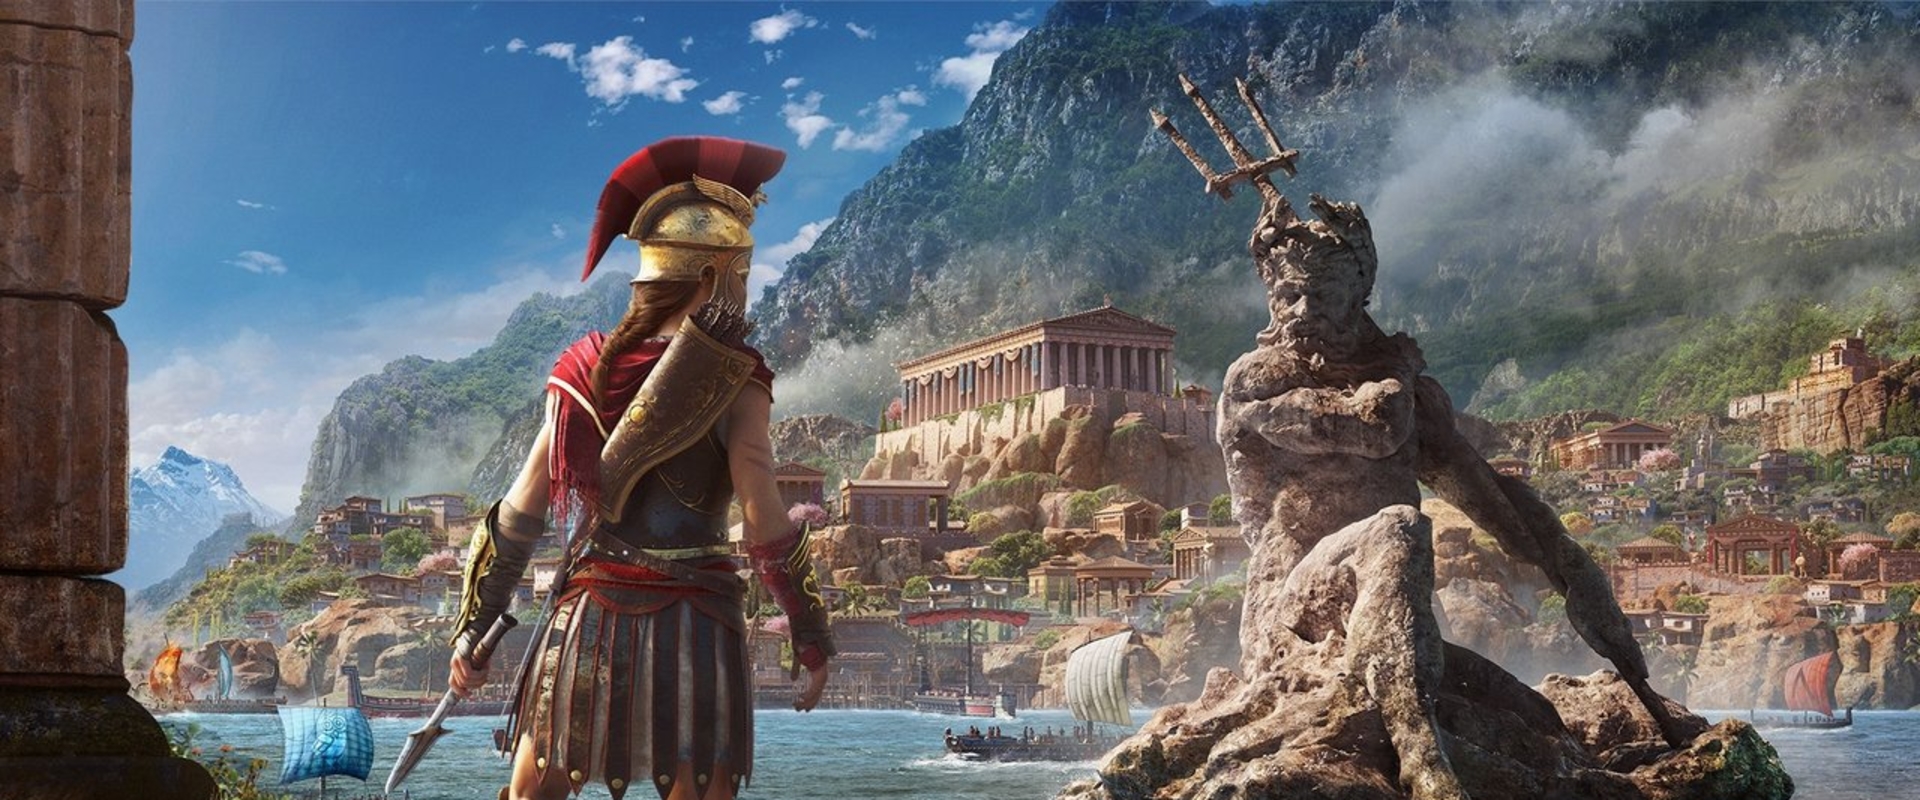 Elképesztő előzetest kapott az Assassins Creed Odyssey